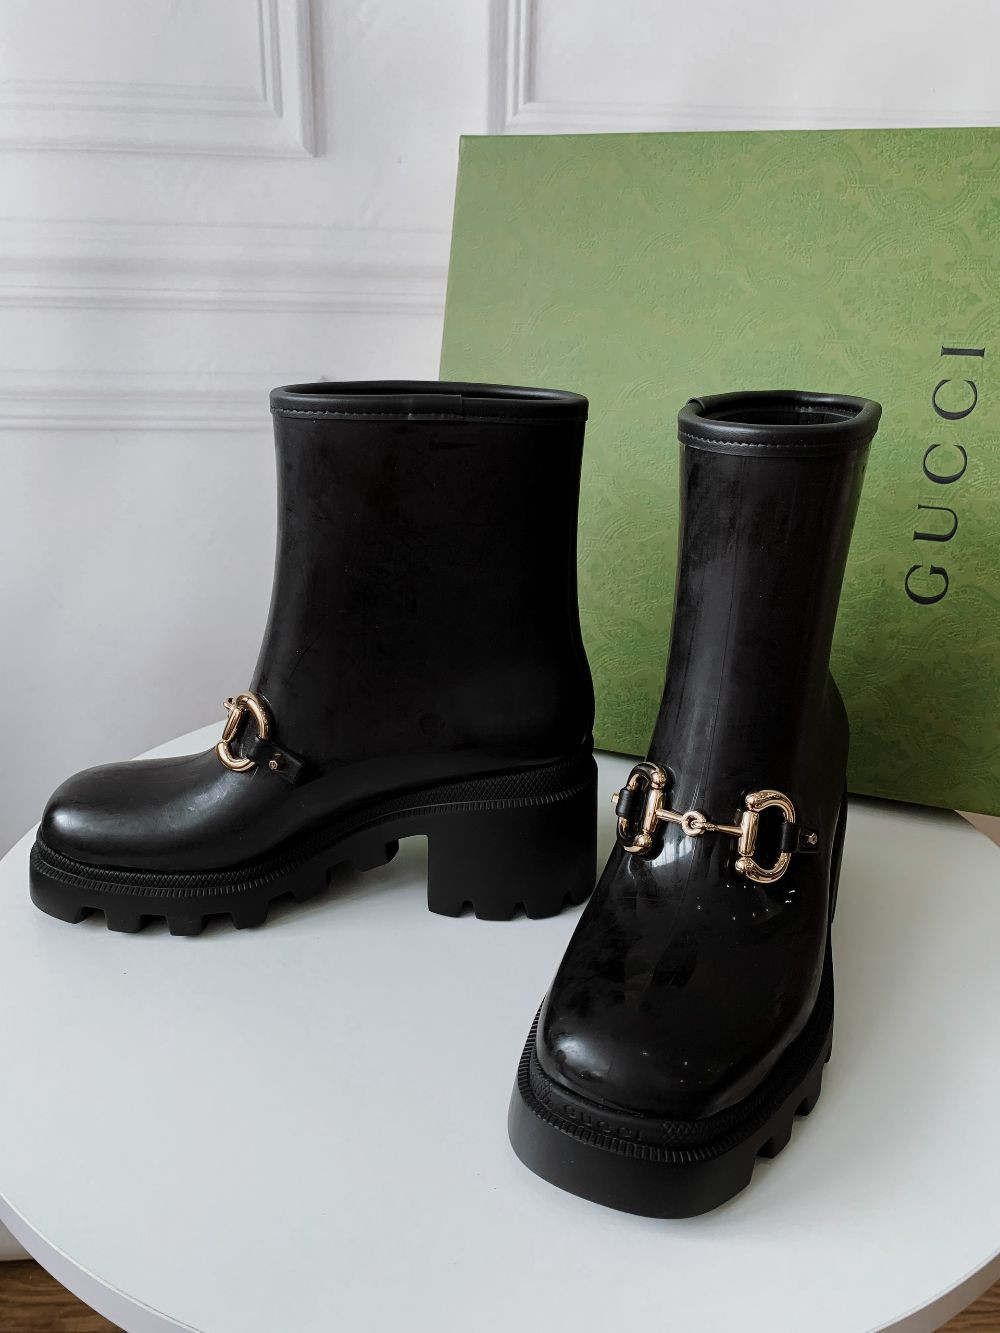 Boot Gucci cao 6cm